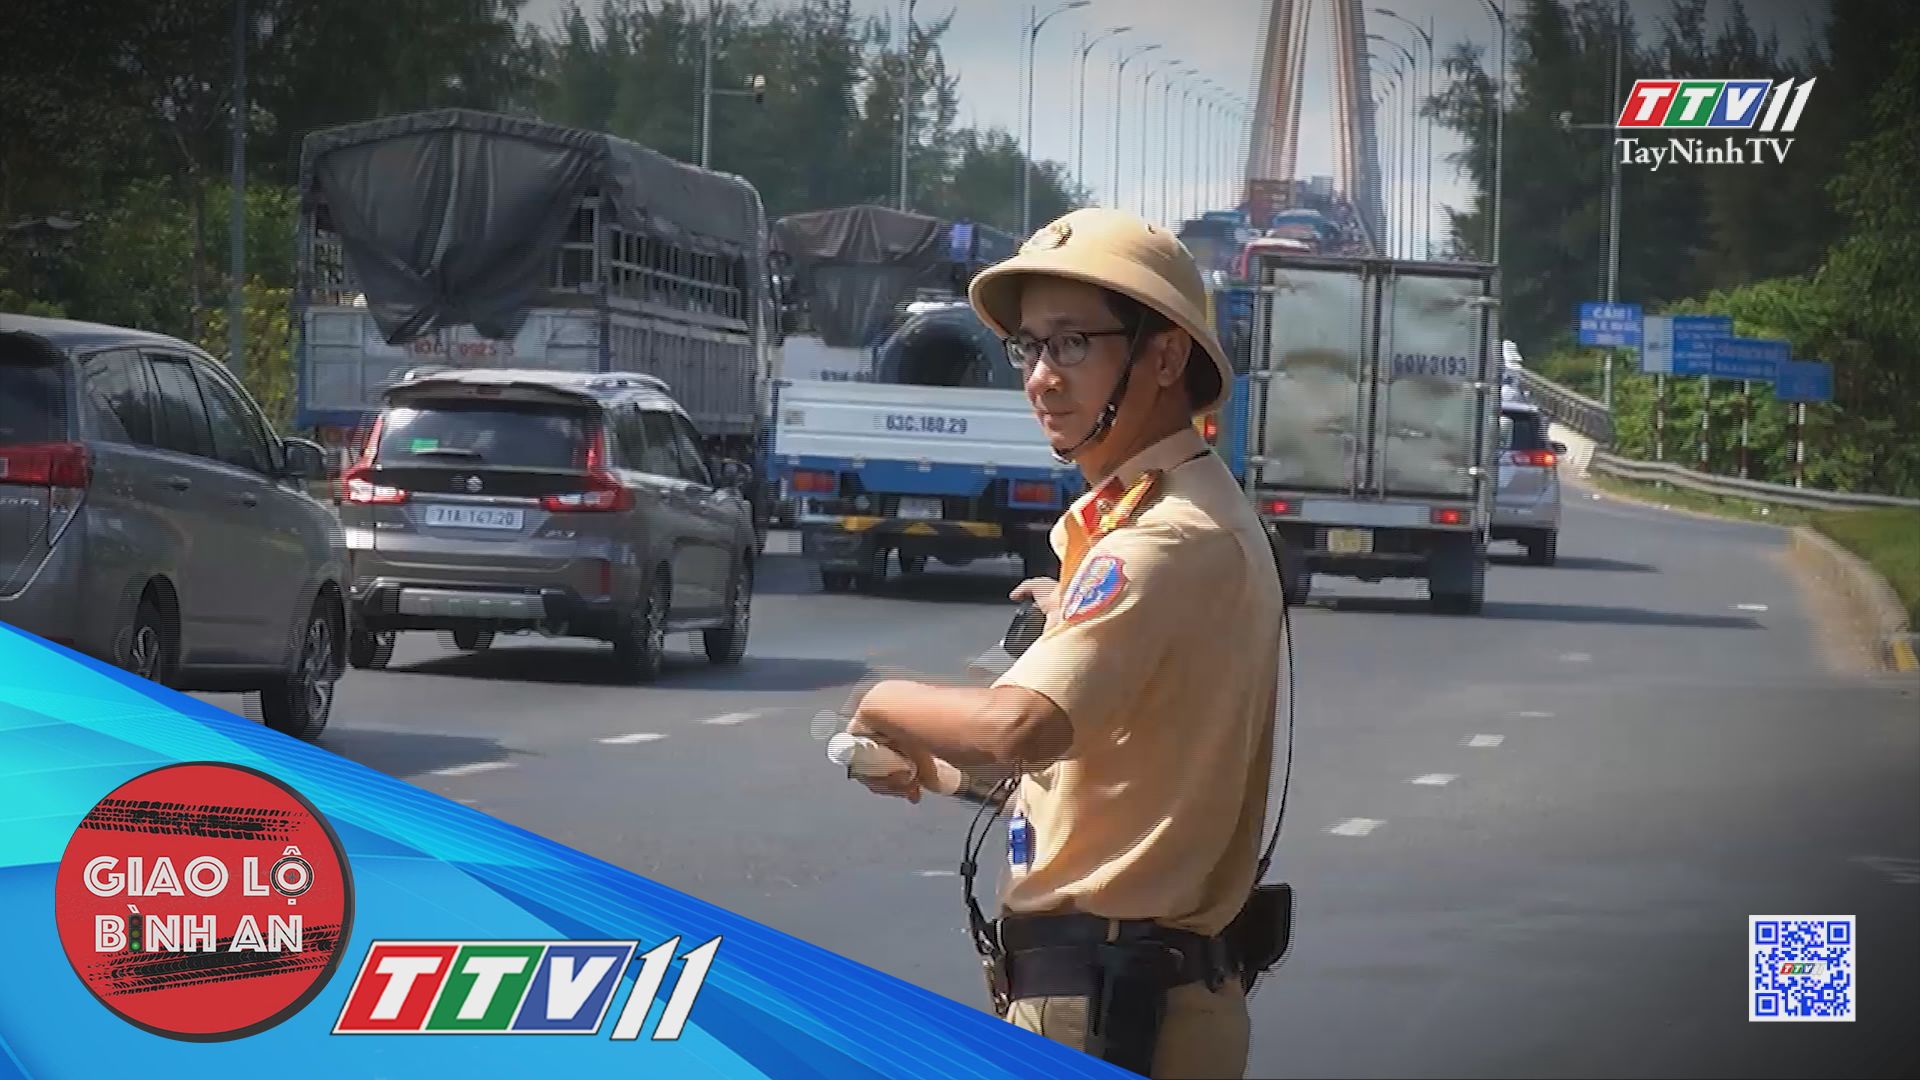 CSGT đội nắng đảm bảo trật tự an toàn giao thông | Giao lộ bình an | TayNinhTV